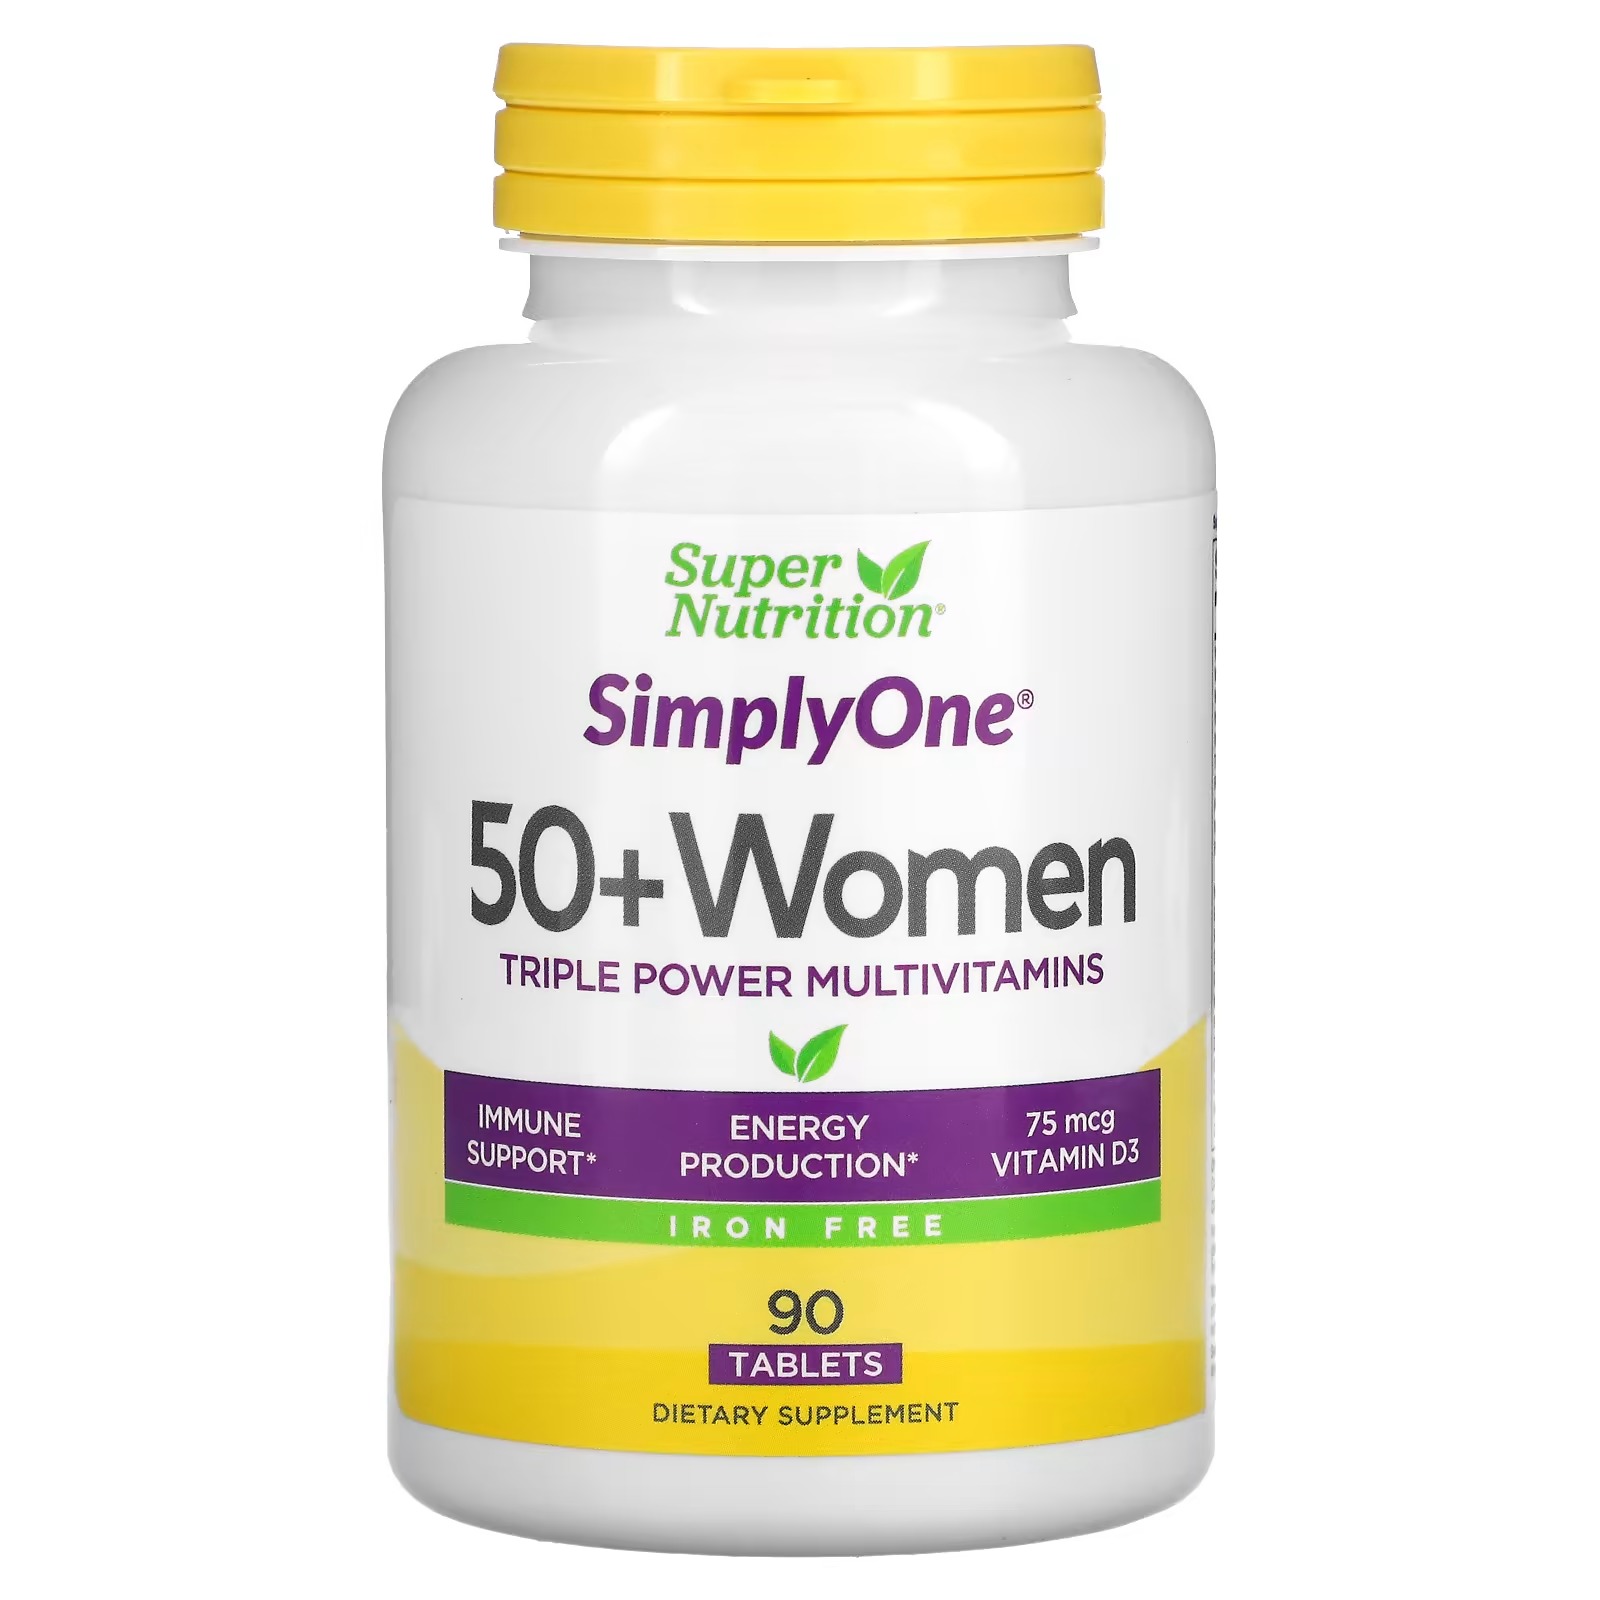 Мультивитамины Super Nutrition Triple Power для женщин старше 50 лет, 90 таблеток super nutrition simplyone мультивитаминная добавка тройного действия для мужчин старше 50 лет 90 таблеток